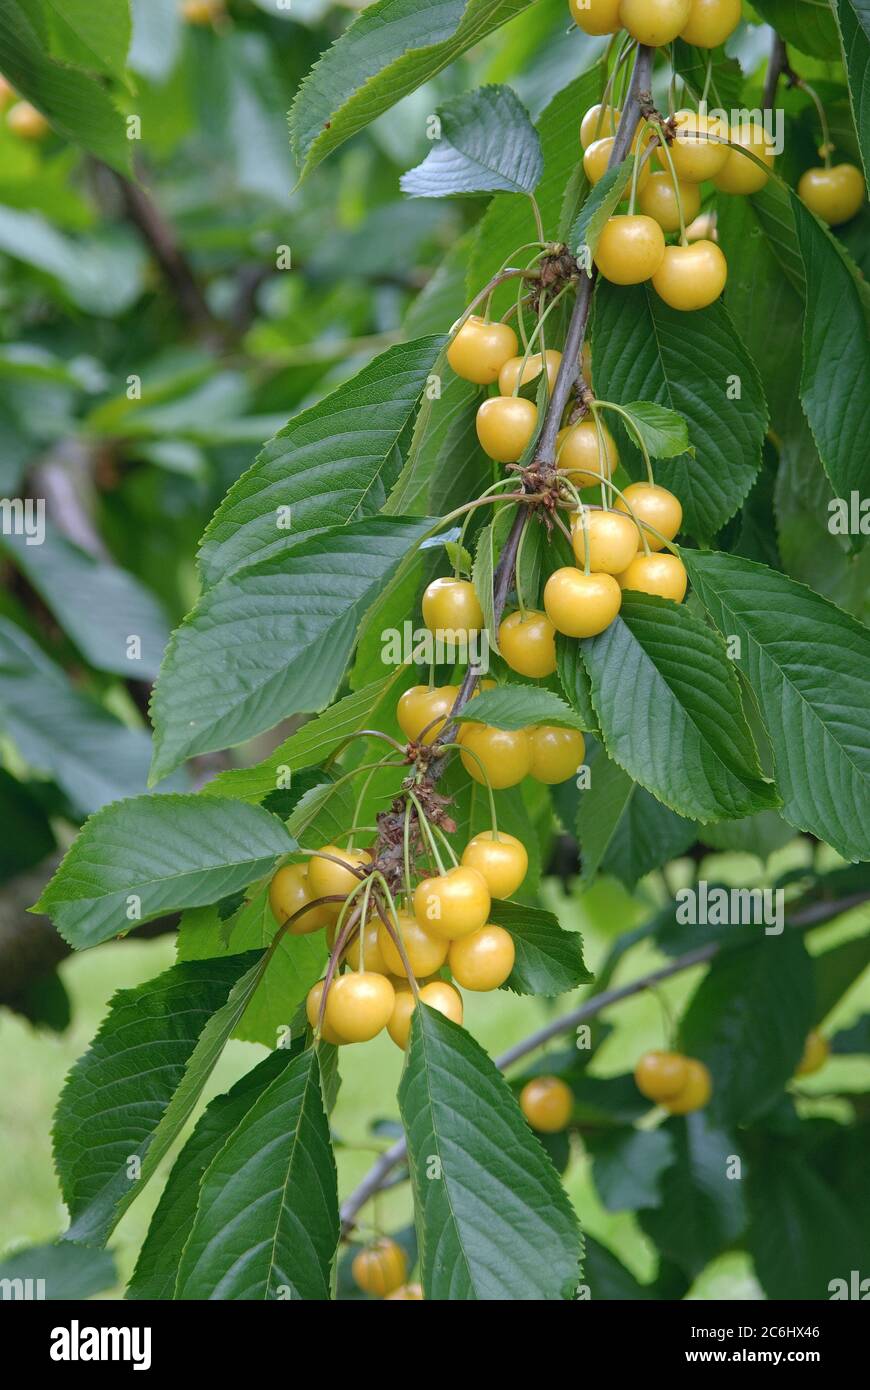 Suess-Kirsche Prunus avium Najella, Sweet cherry Prunus avium Najella Stock Photo